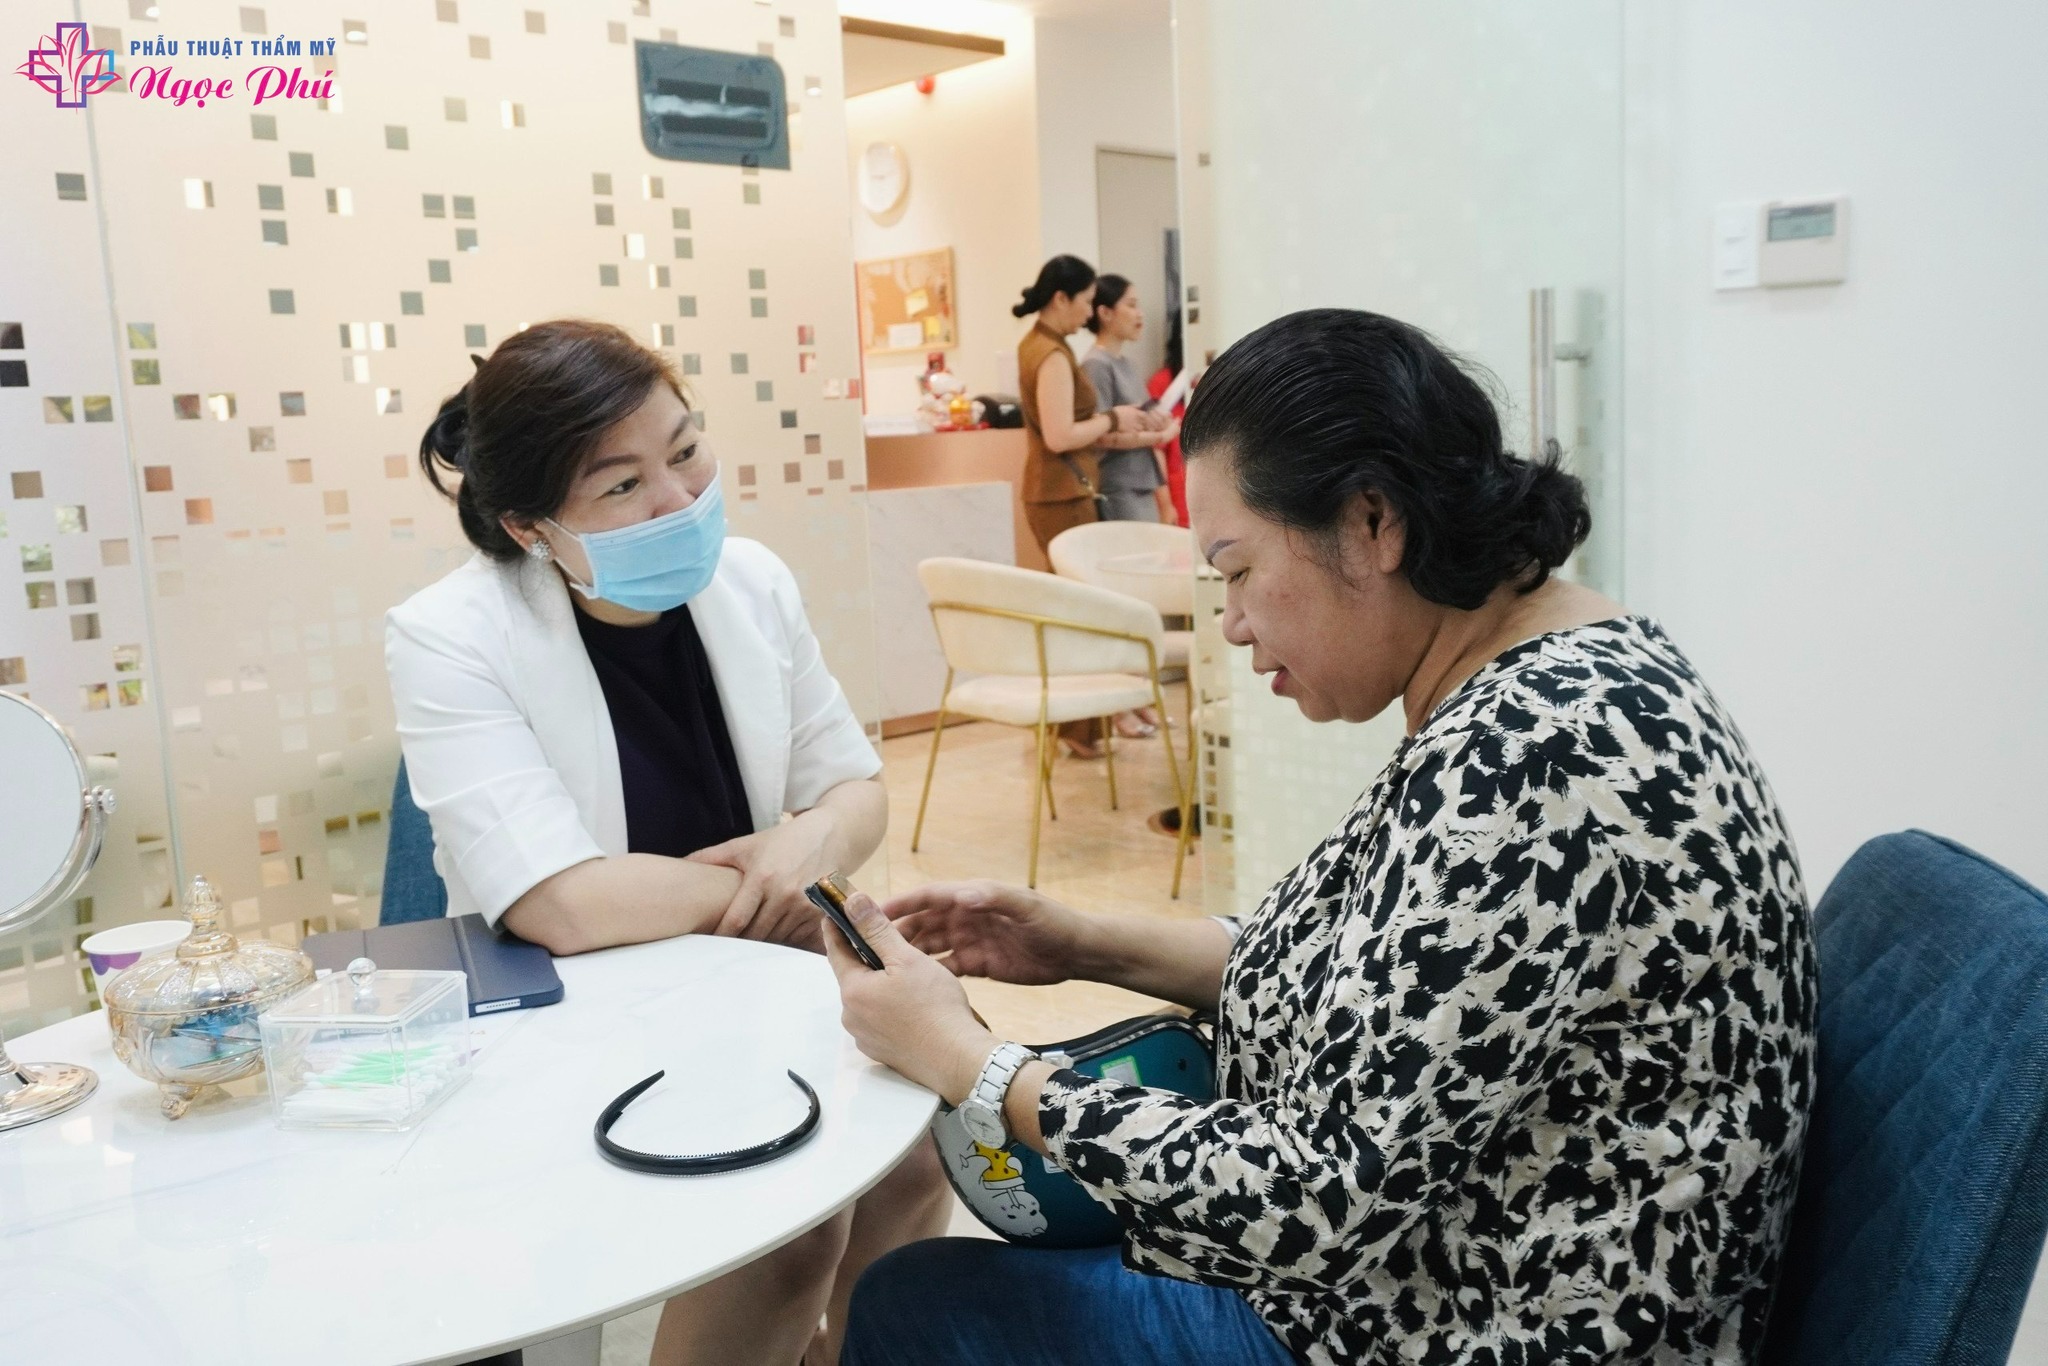 Khách hàng được tư vấn dịch vụ tiêu phẫu căng da mặt tại Thẩm mỹ Ngọc Phú